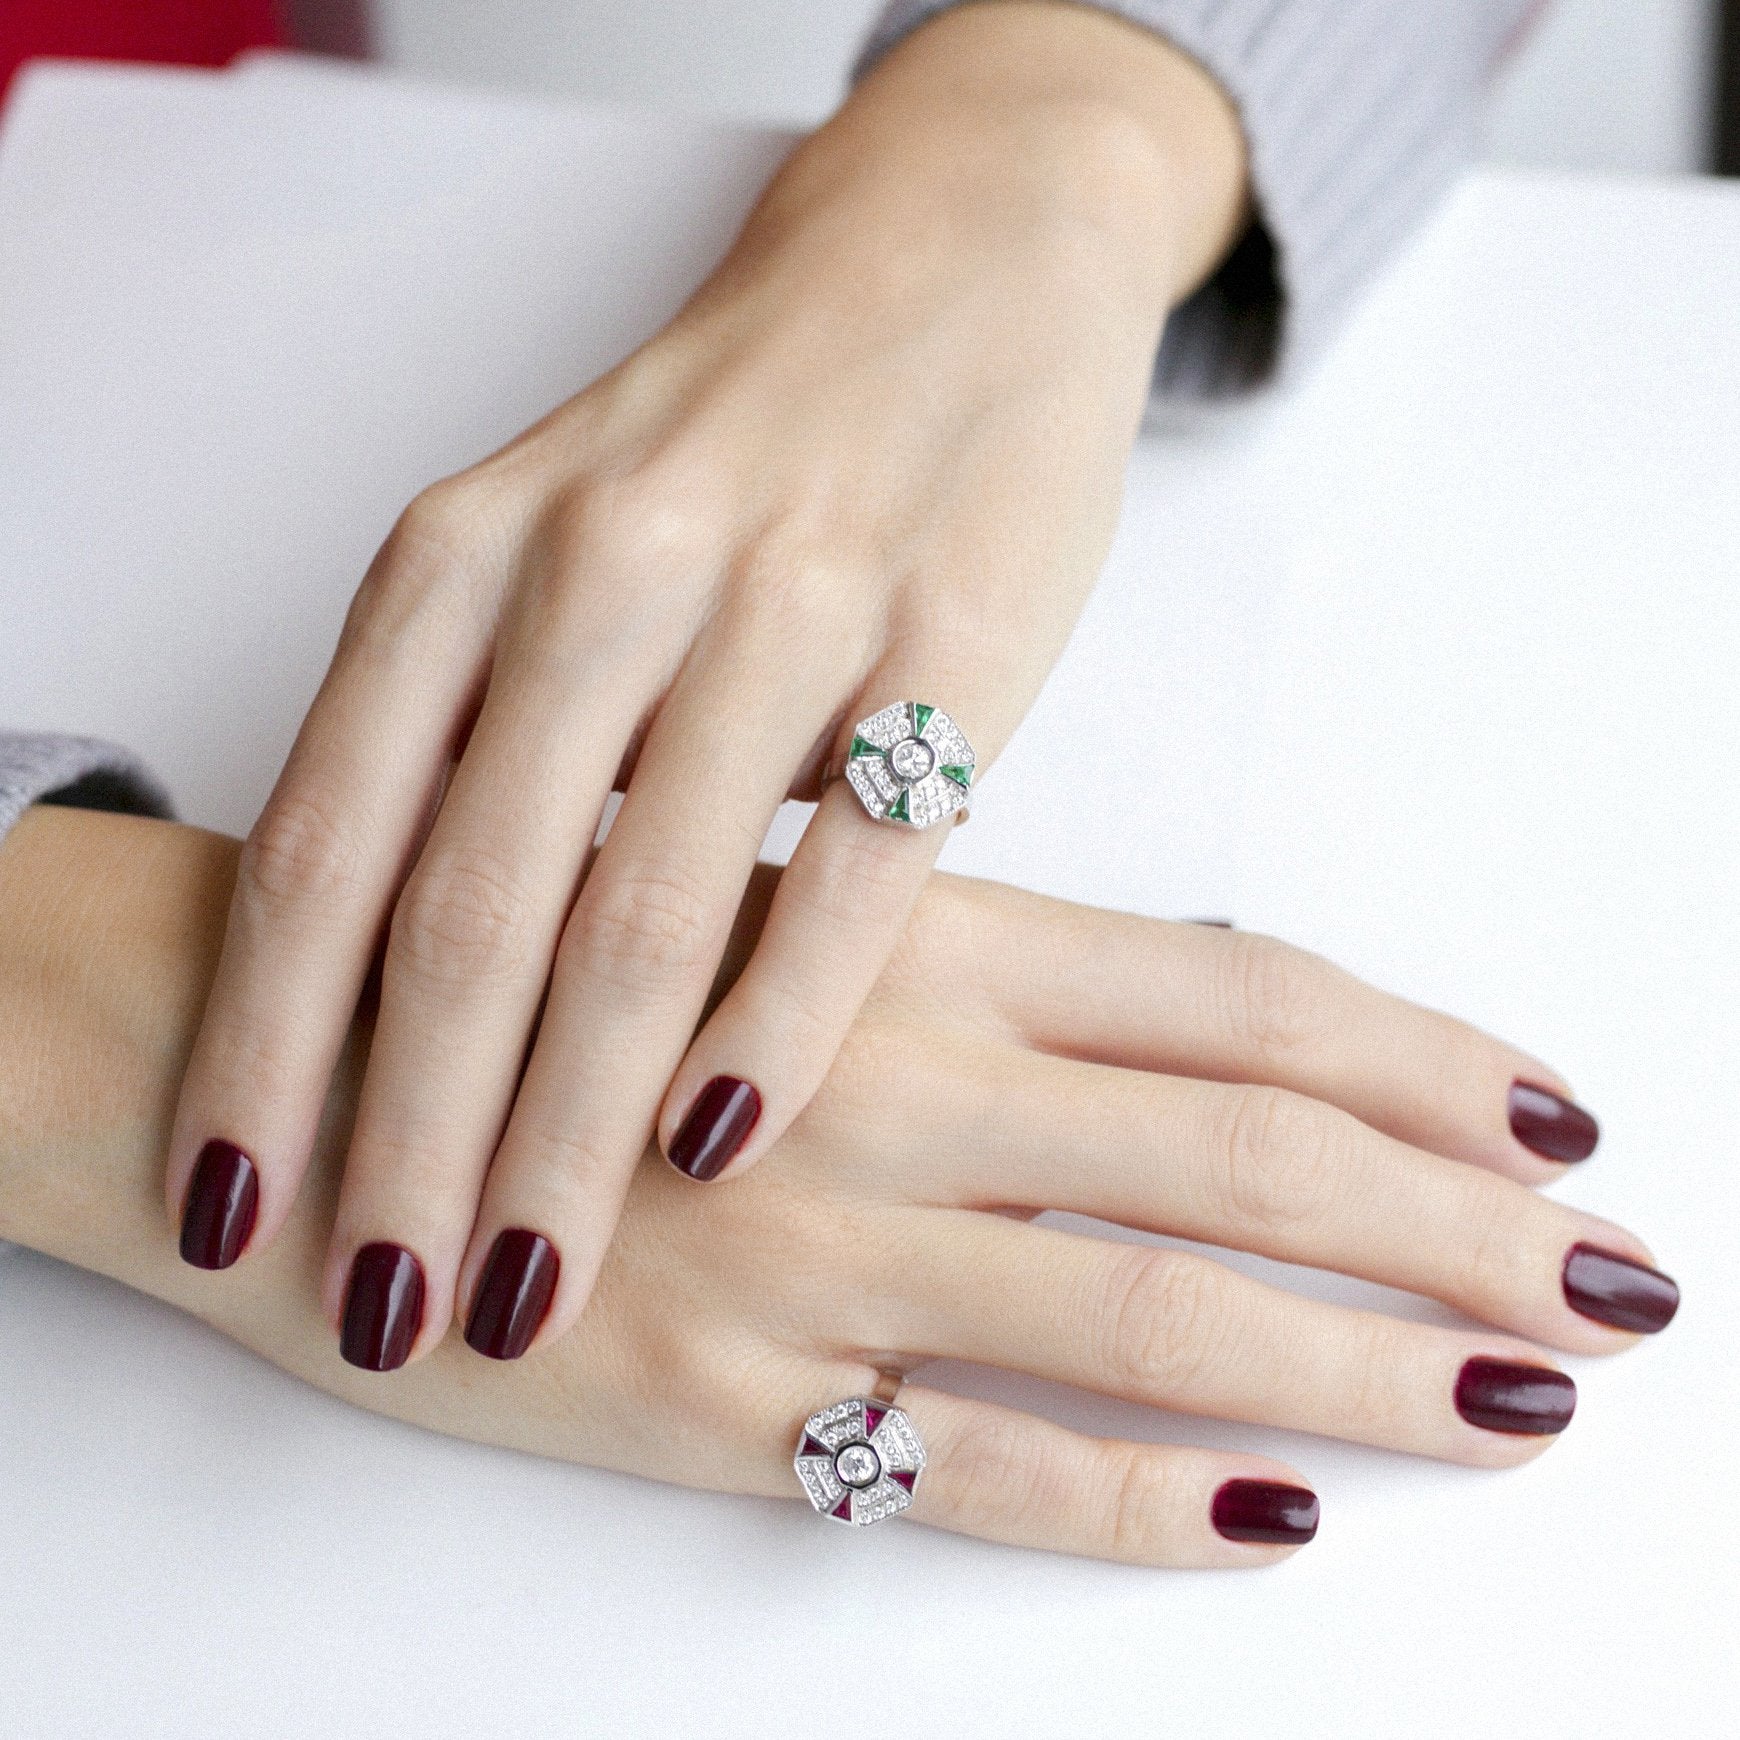 Paris Ruby Diamond Ring